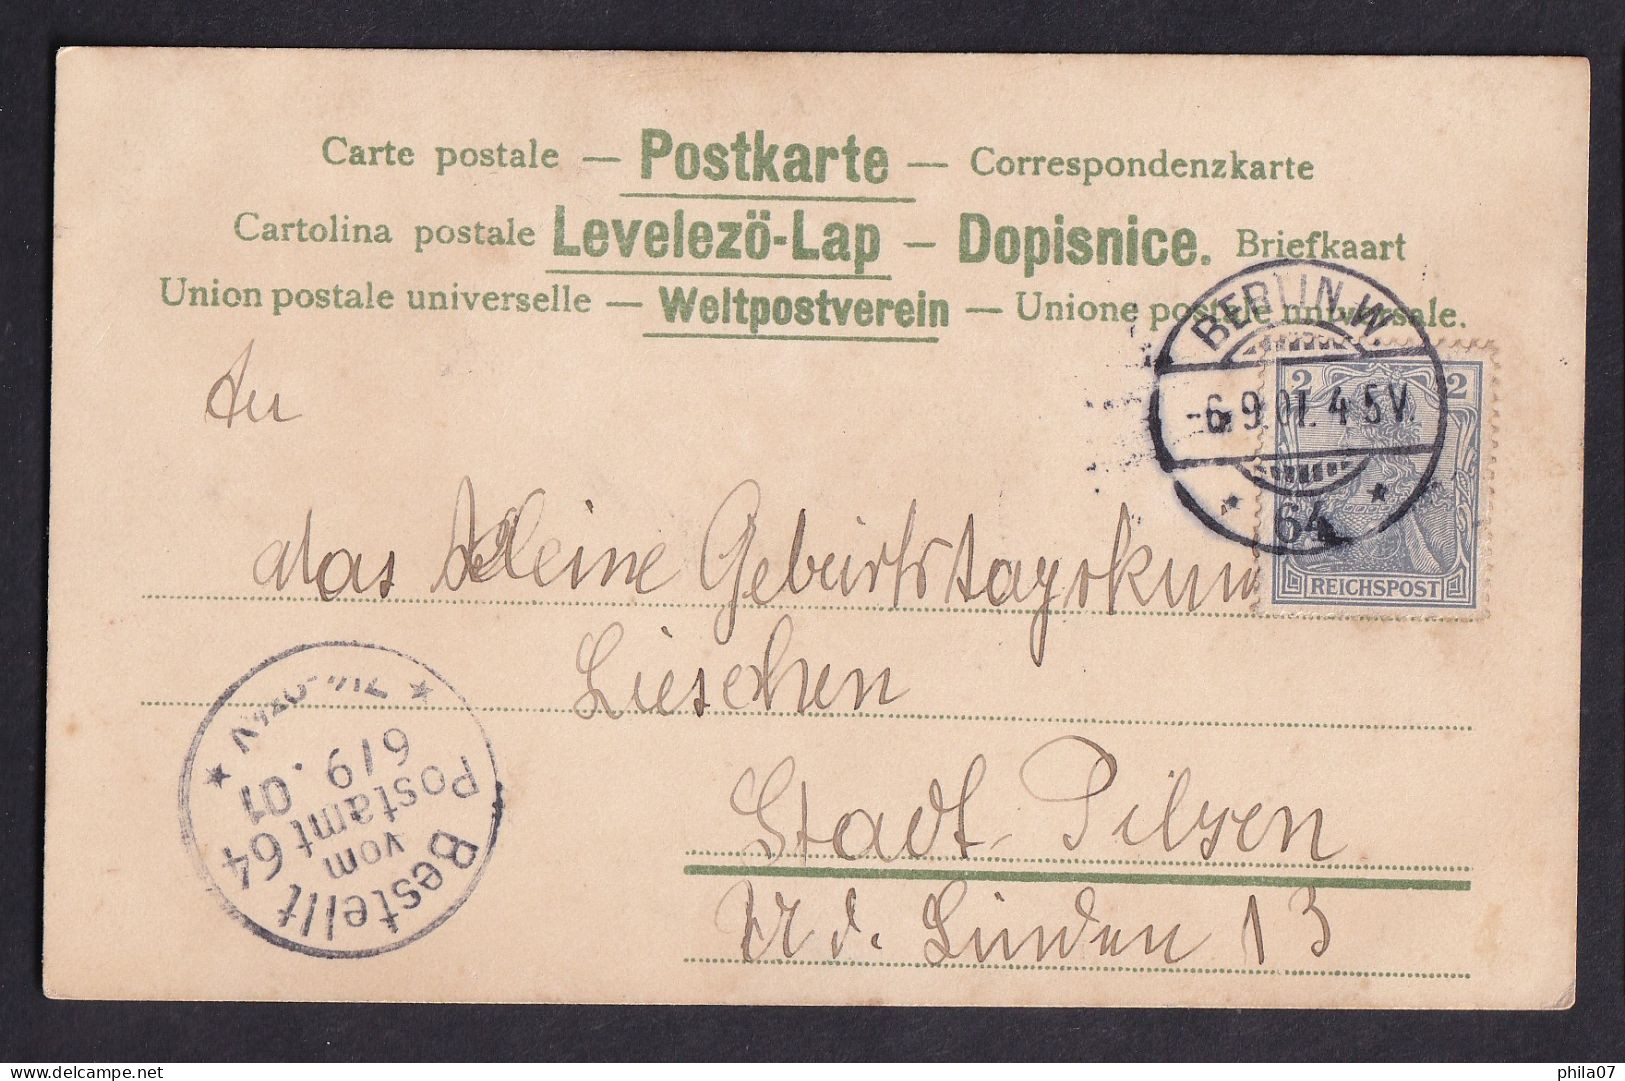 Gruss Aus ... / Sieh Ich Will Dir Heute Geben,... / Year 1901 / Long Line Postcard Circulated, 2 Scans - Gruss Aus.../ Grüsse Aus...